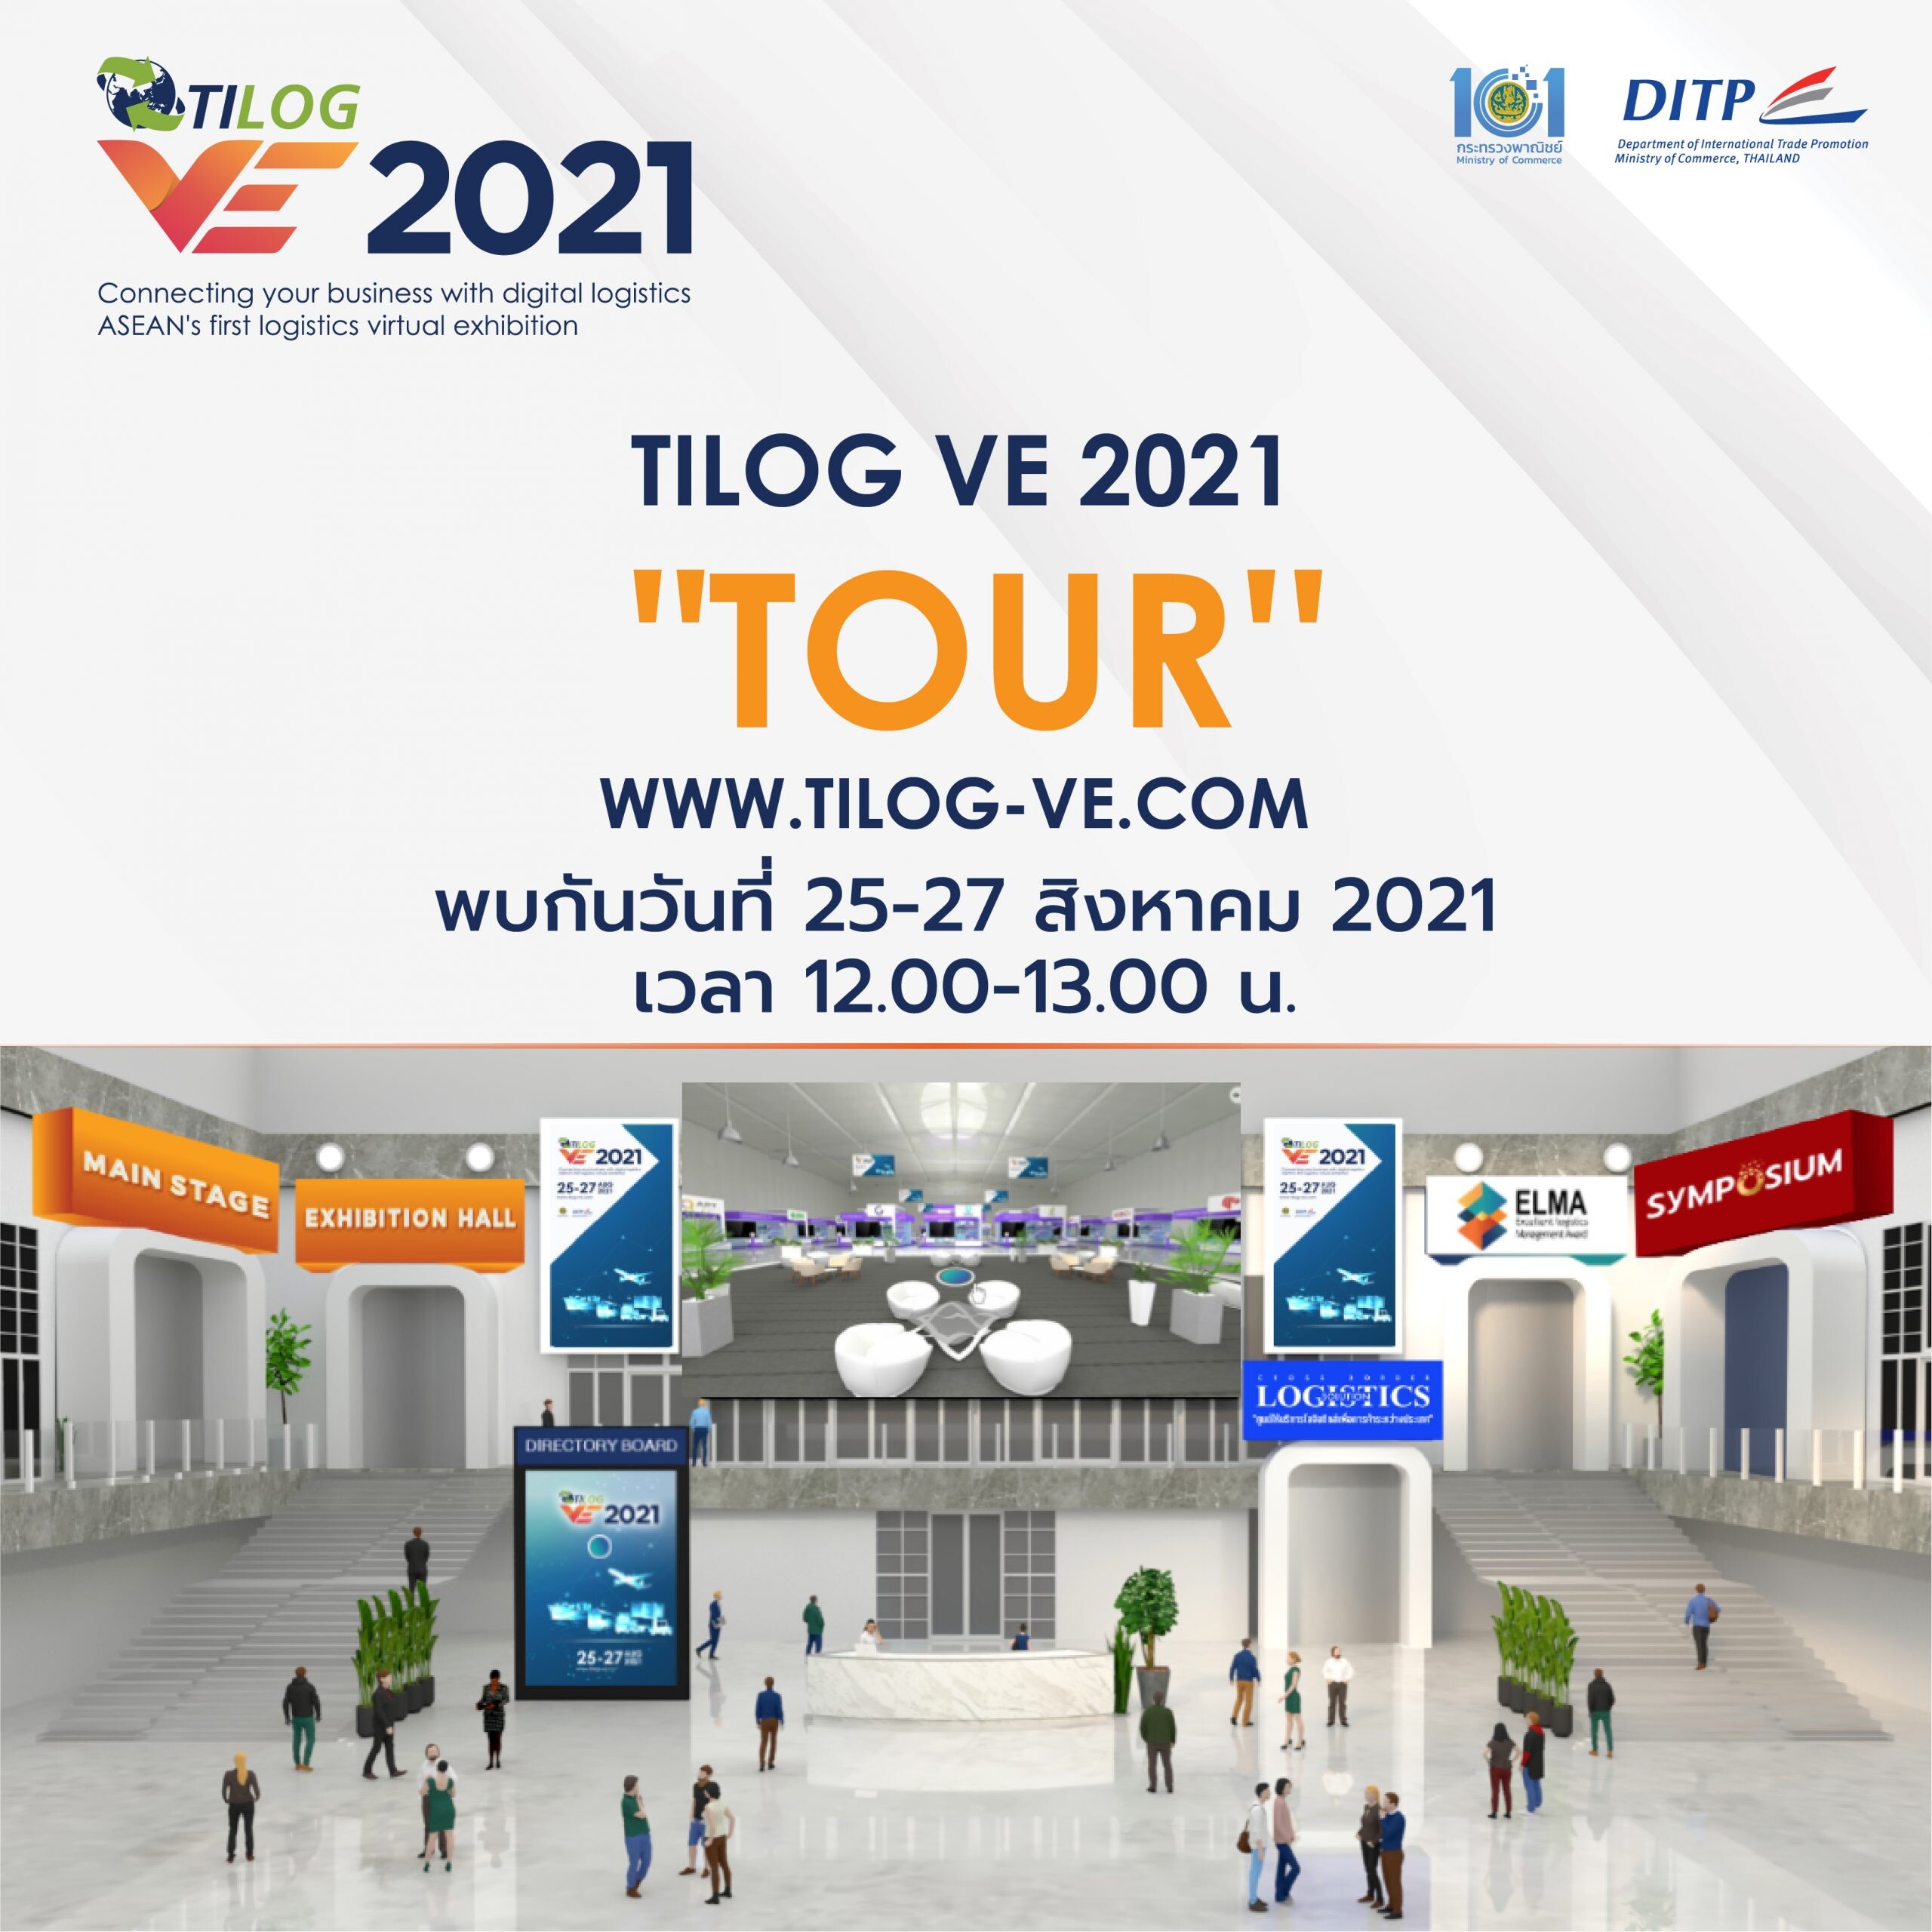 "พาณิชย์" เปิด TILOG VE 2021 งานแสดงสินค้าโลจิสติกส์เสมือนจริง ครบวงจรครั้งแรกและยิ่งใหญ่ที่สุดในอาเซียน ดันโลจิสติกส์ไทยสู่สากล คาดสร้างมูลค่ากว่า 800 ล้านบาท